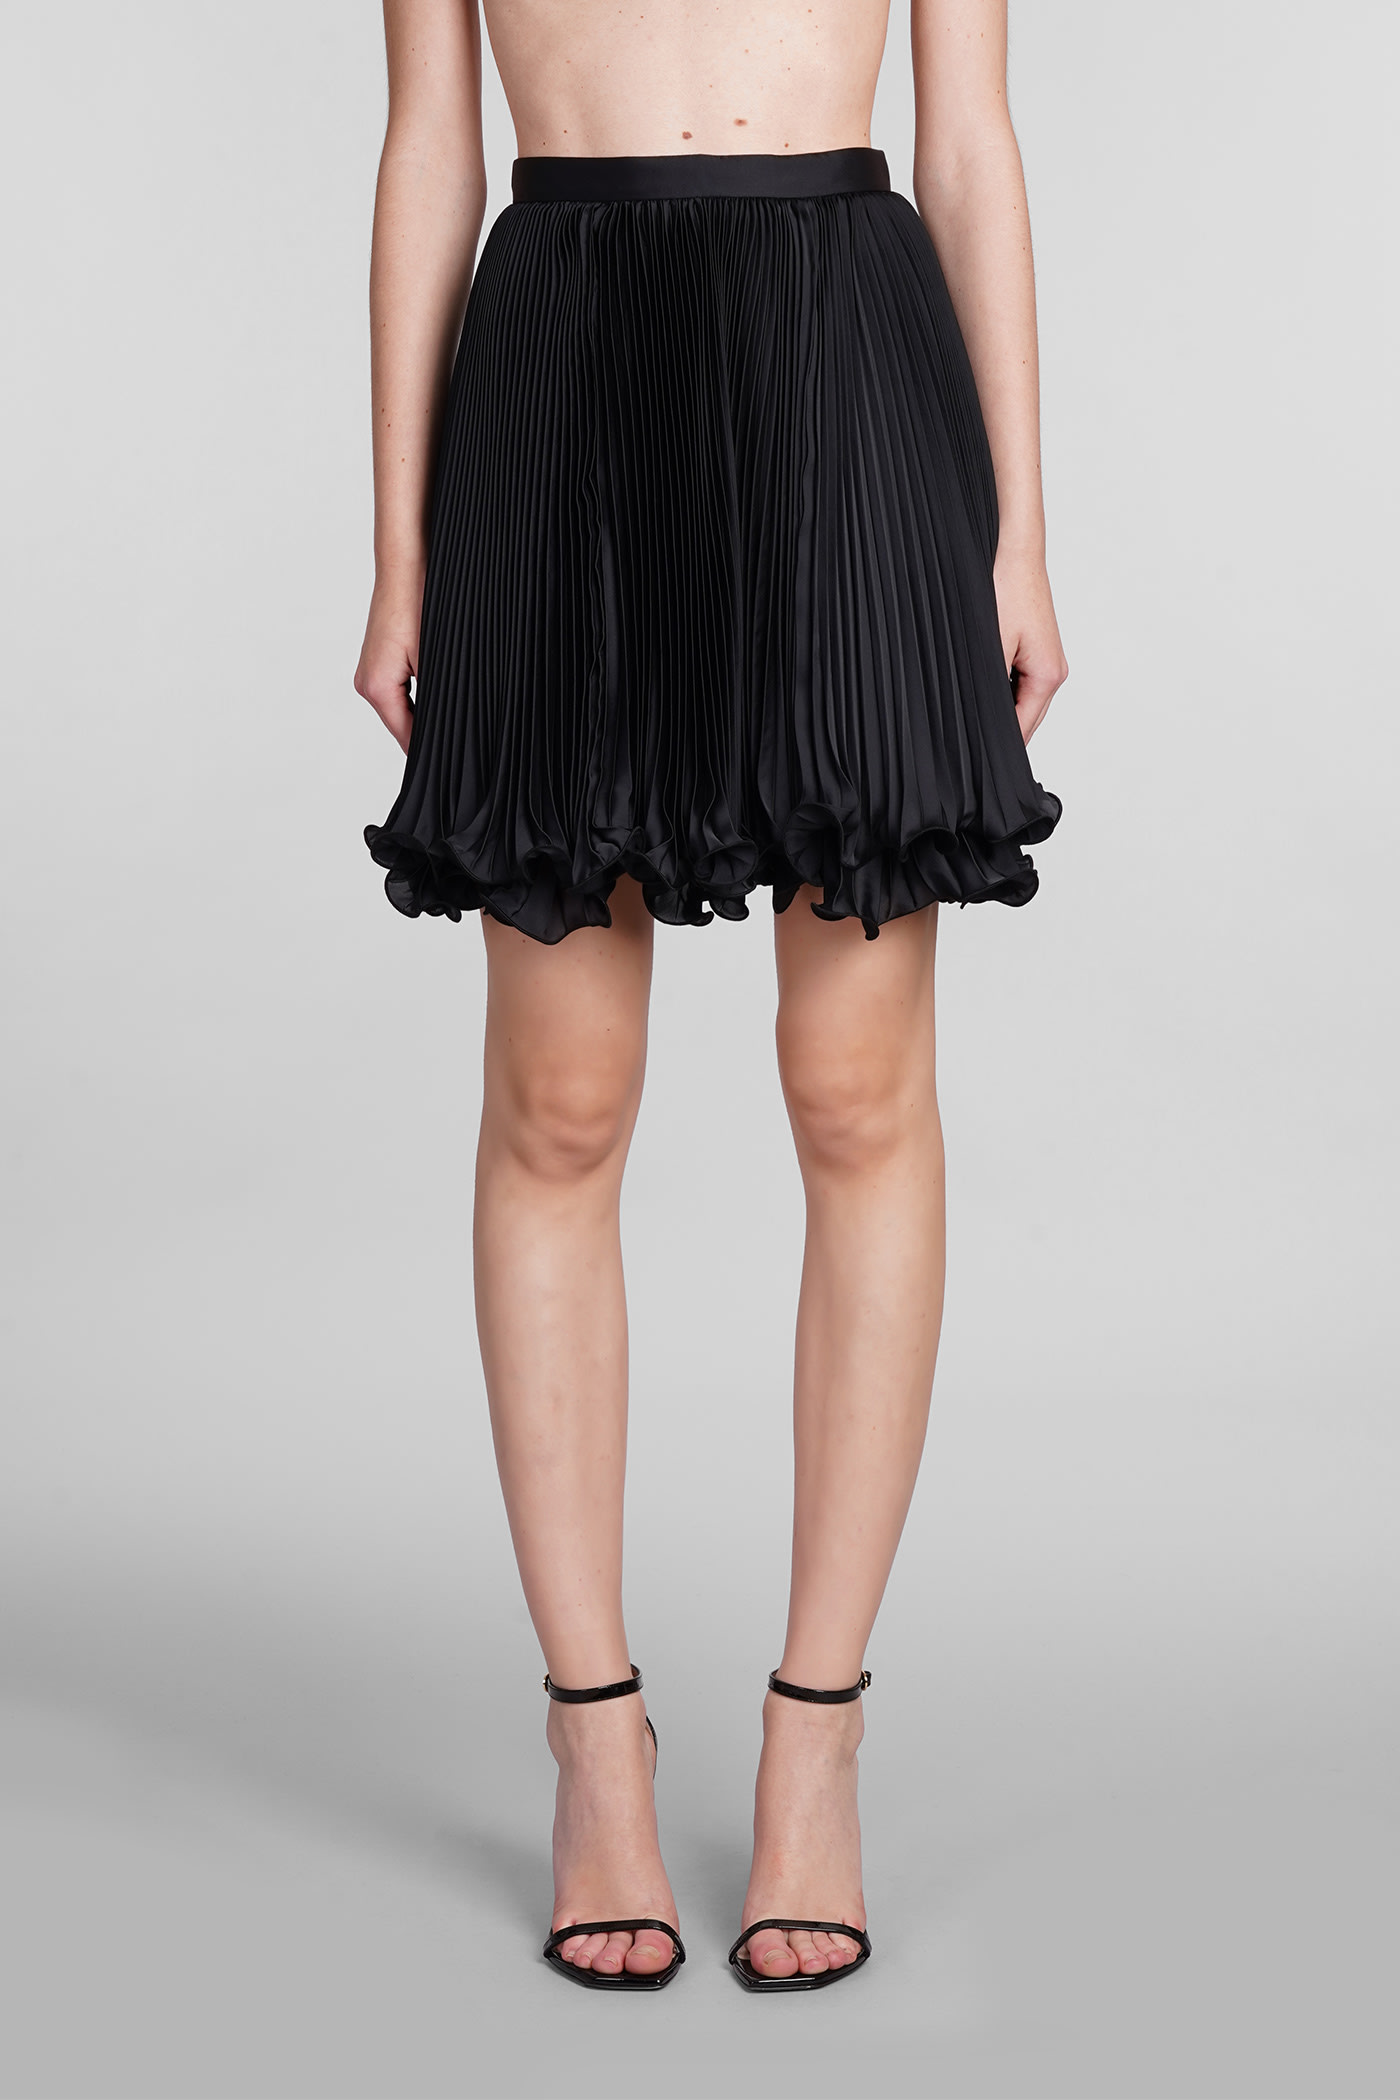 Skirt In Black Polyester